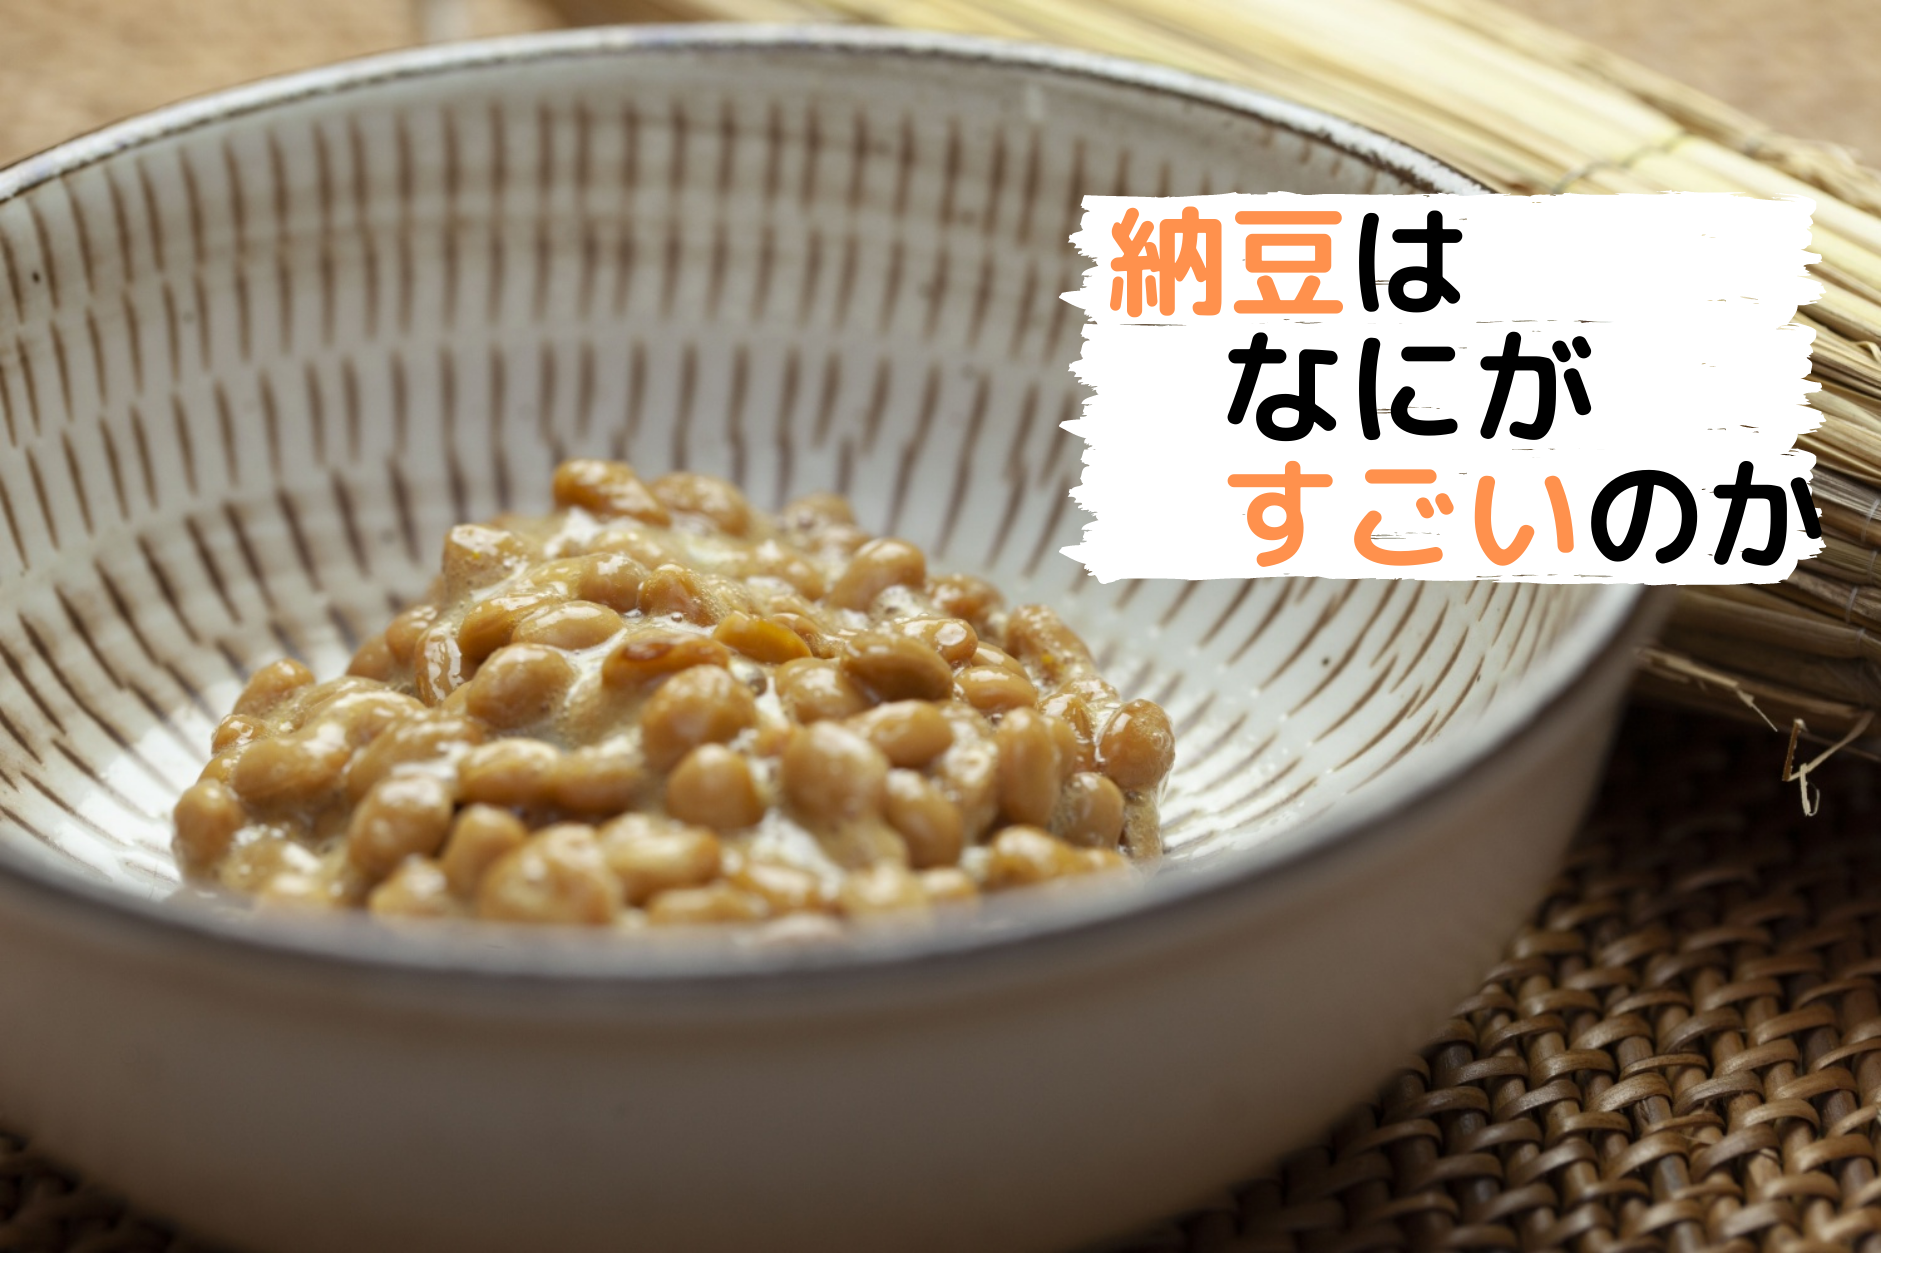 納豆 タンパク質 1 パック